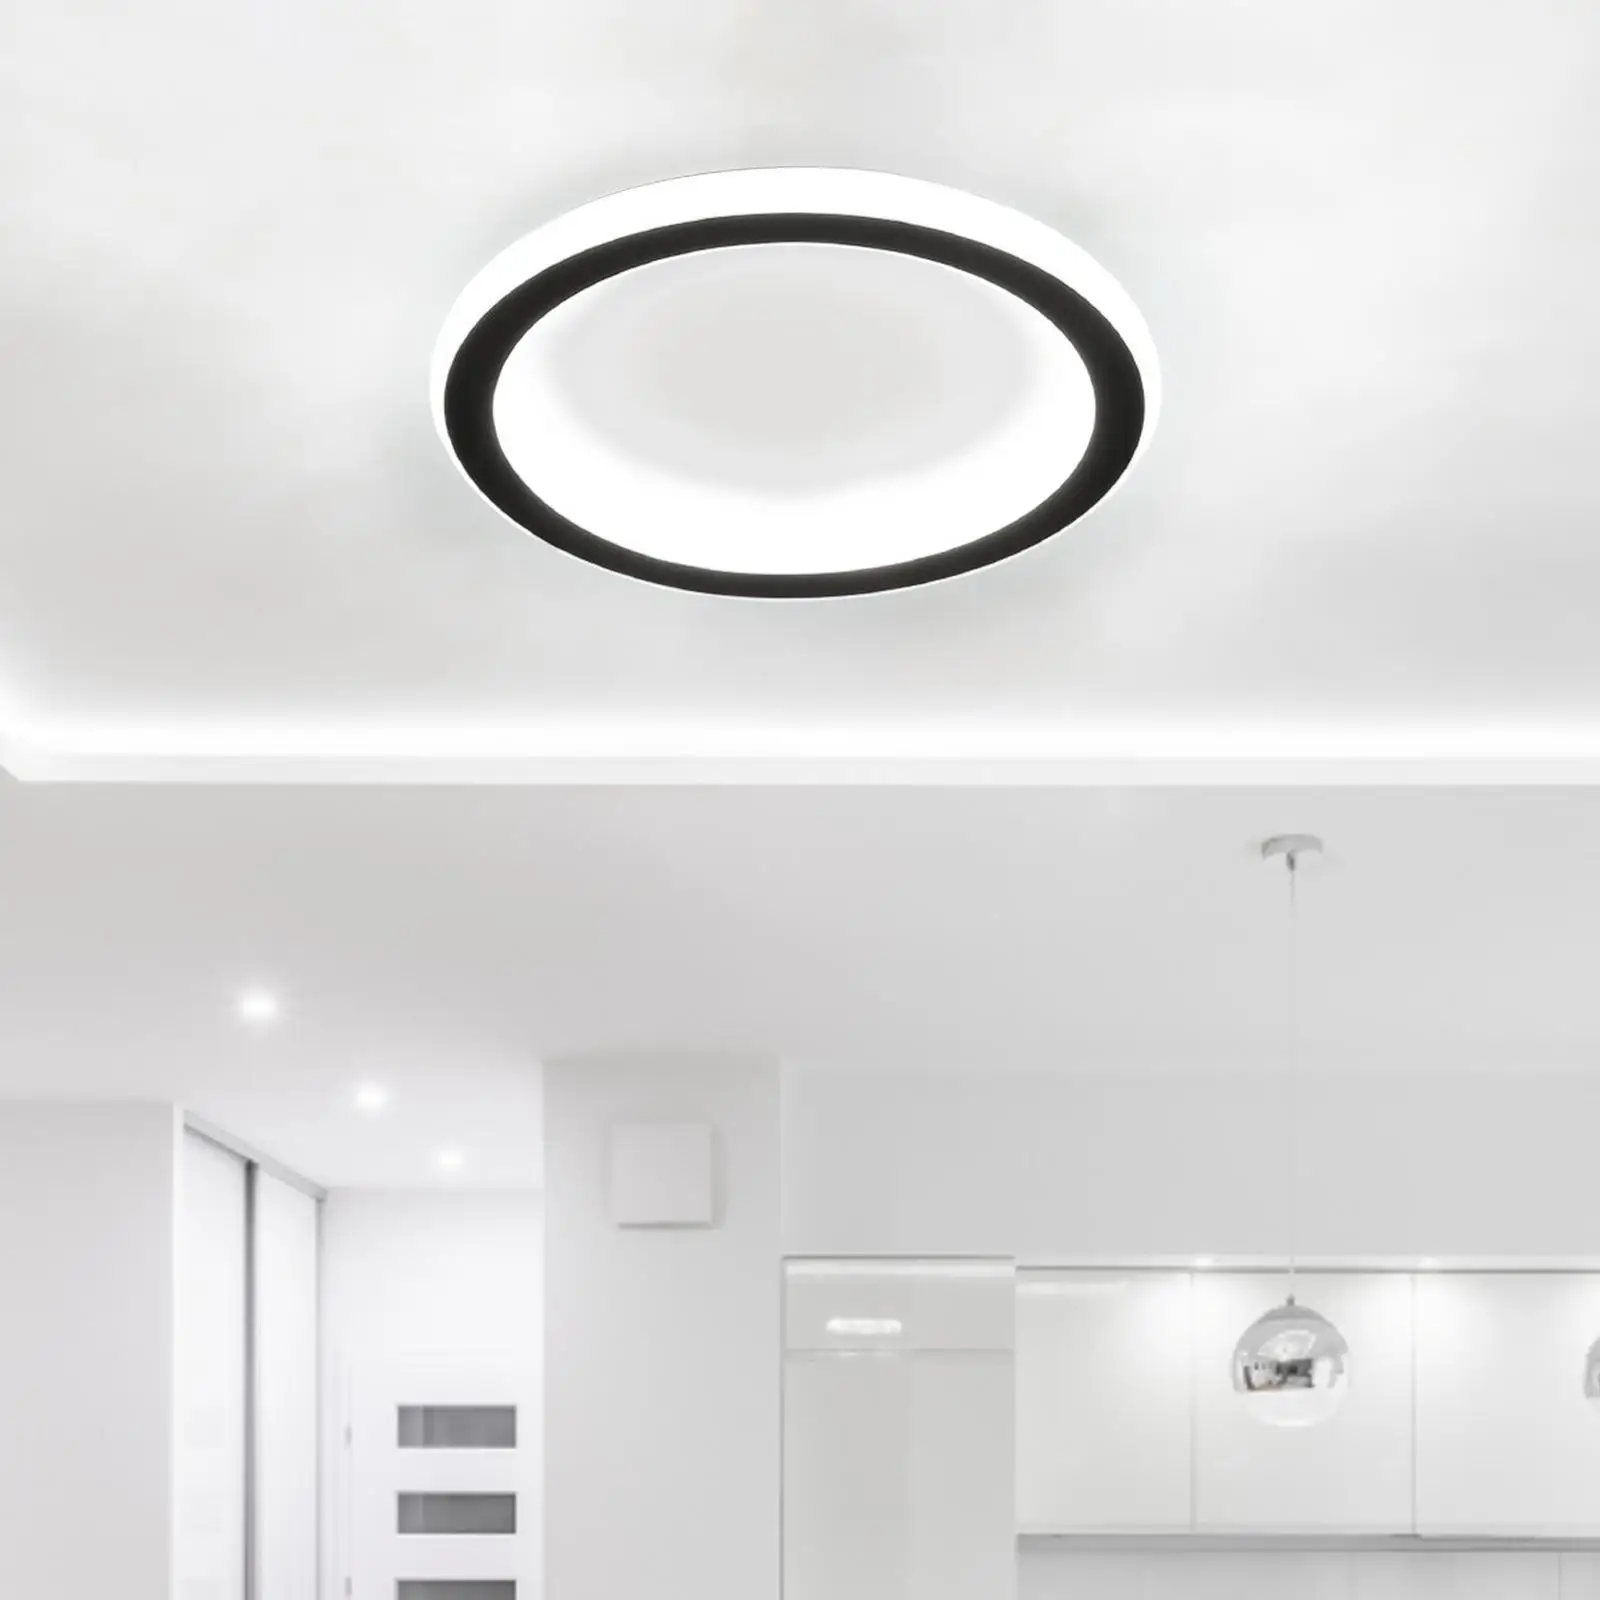 Modern Ceiling Light lamp Lighting LED Decoration Pendant Light Fixture for Corridor Office Dining Room Decor Bedroom